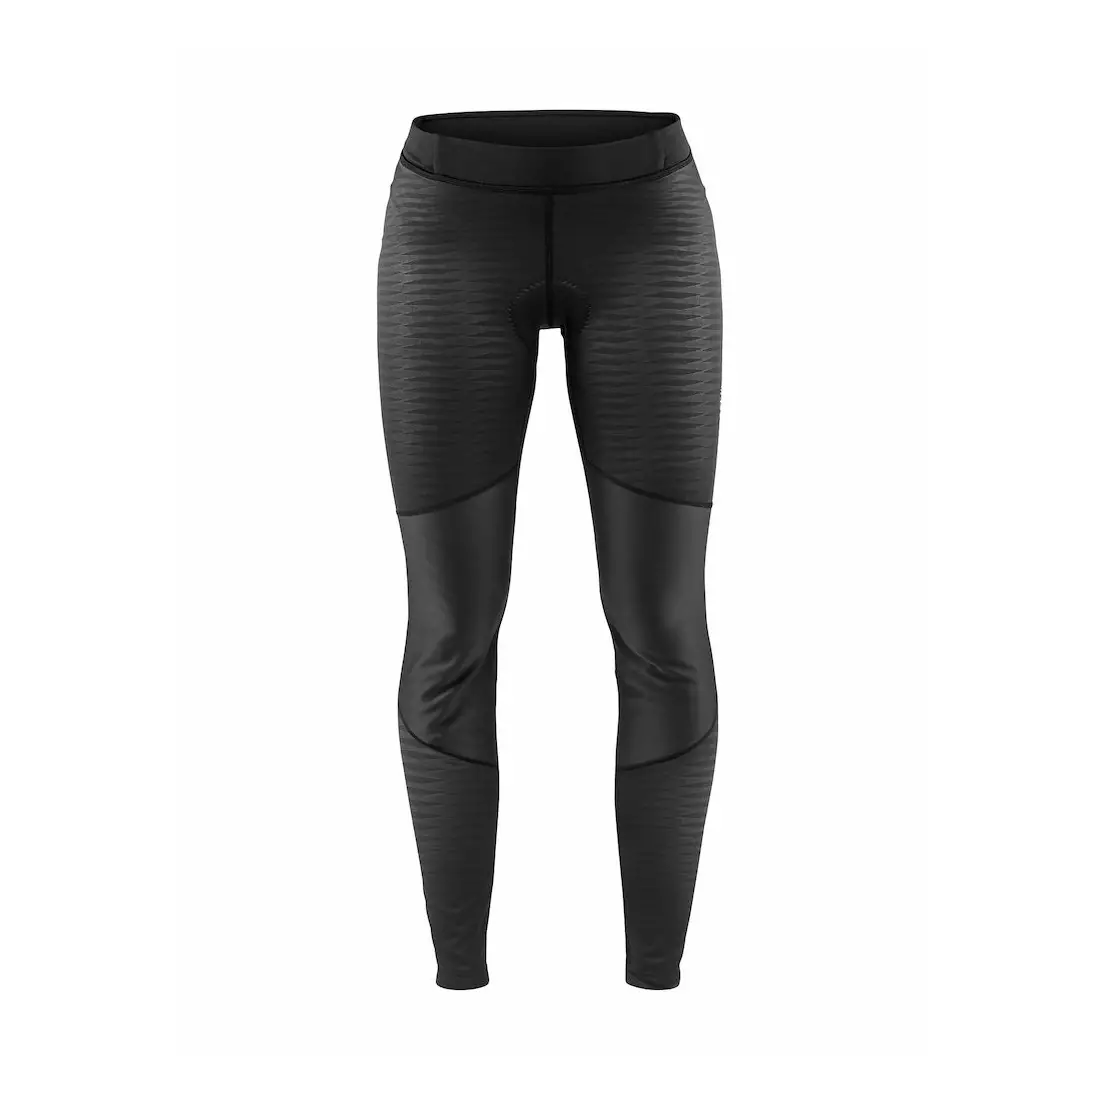 CRAFT BIKE IDEAL Wind dámské cyklistické kalhoty, zimní, černé 1906549-999999